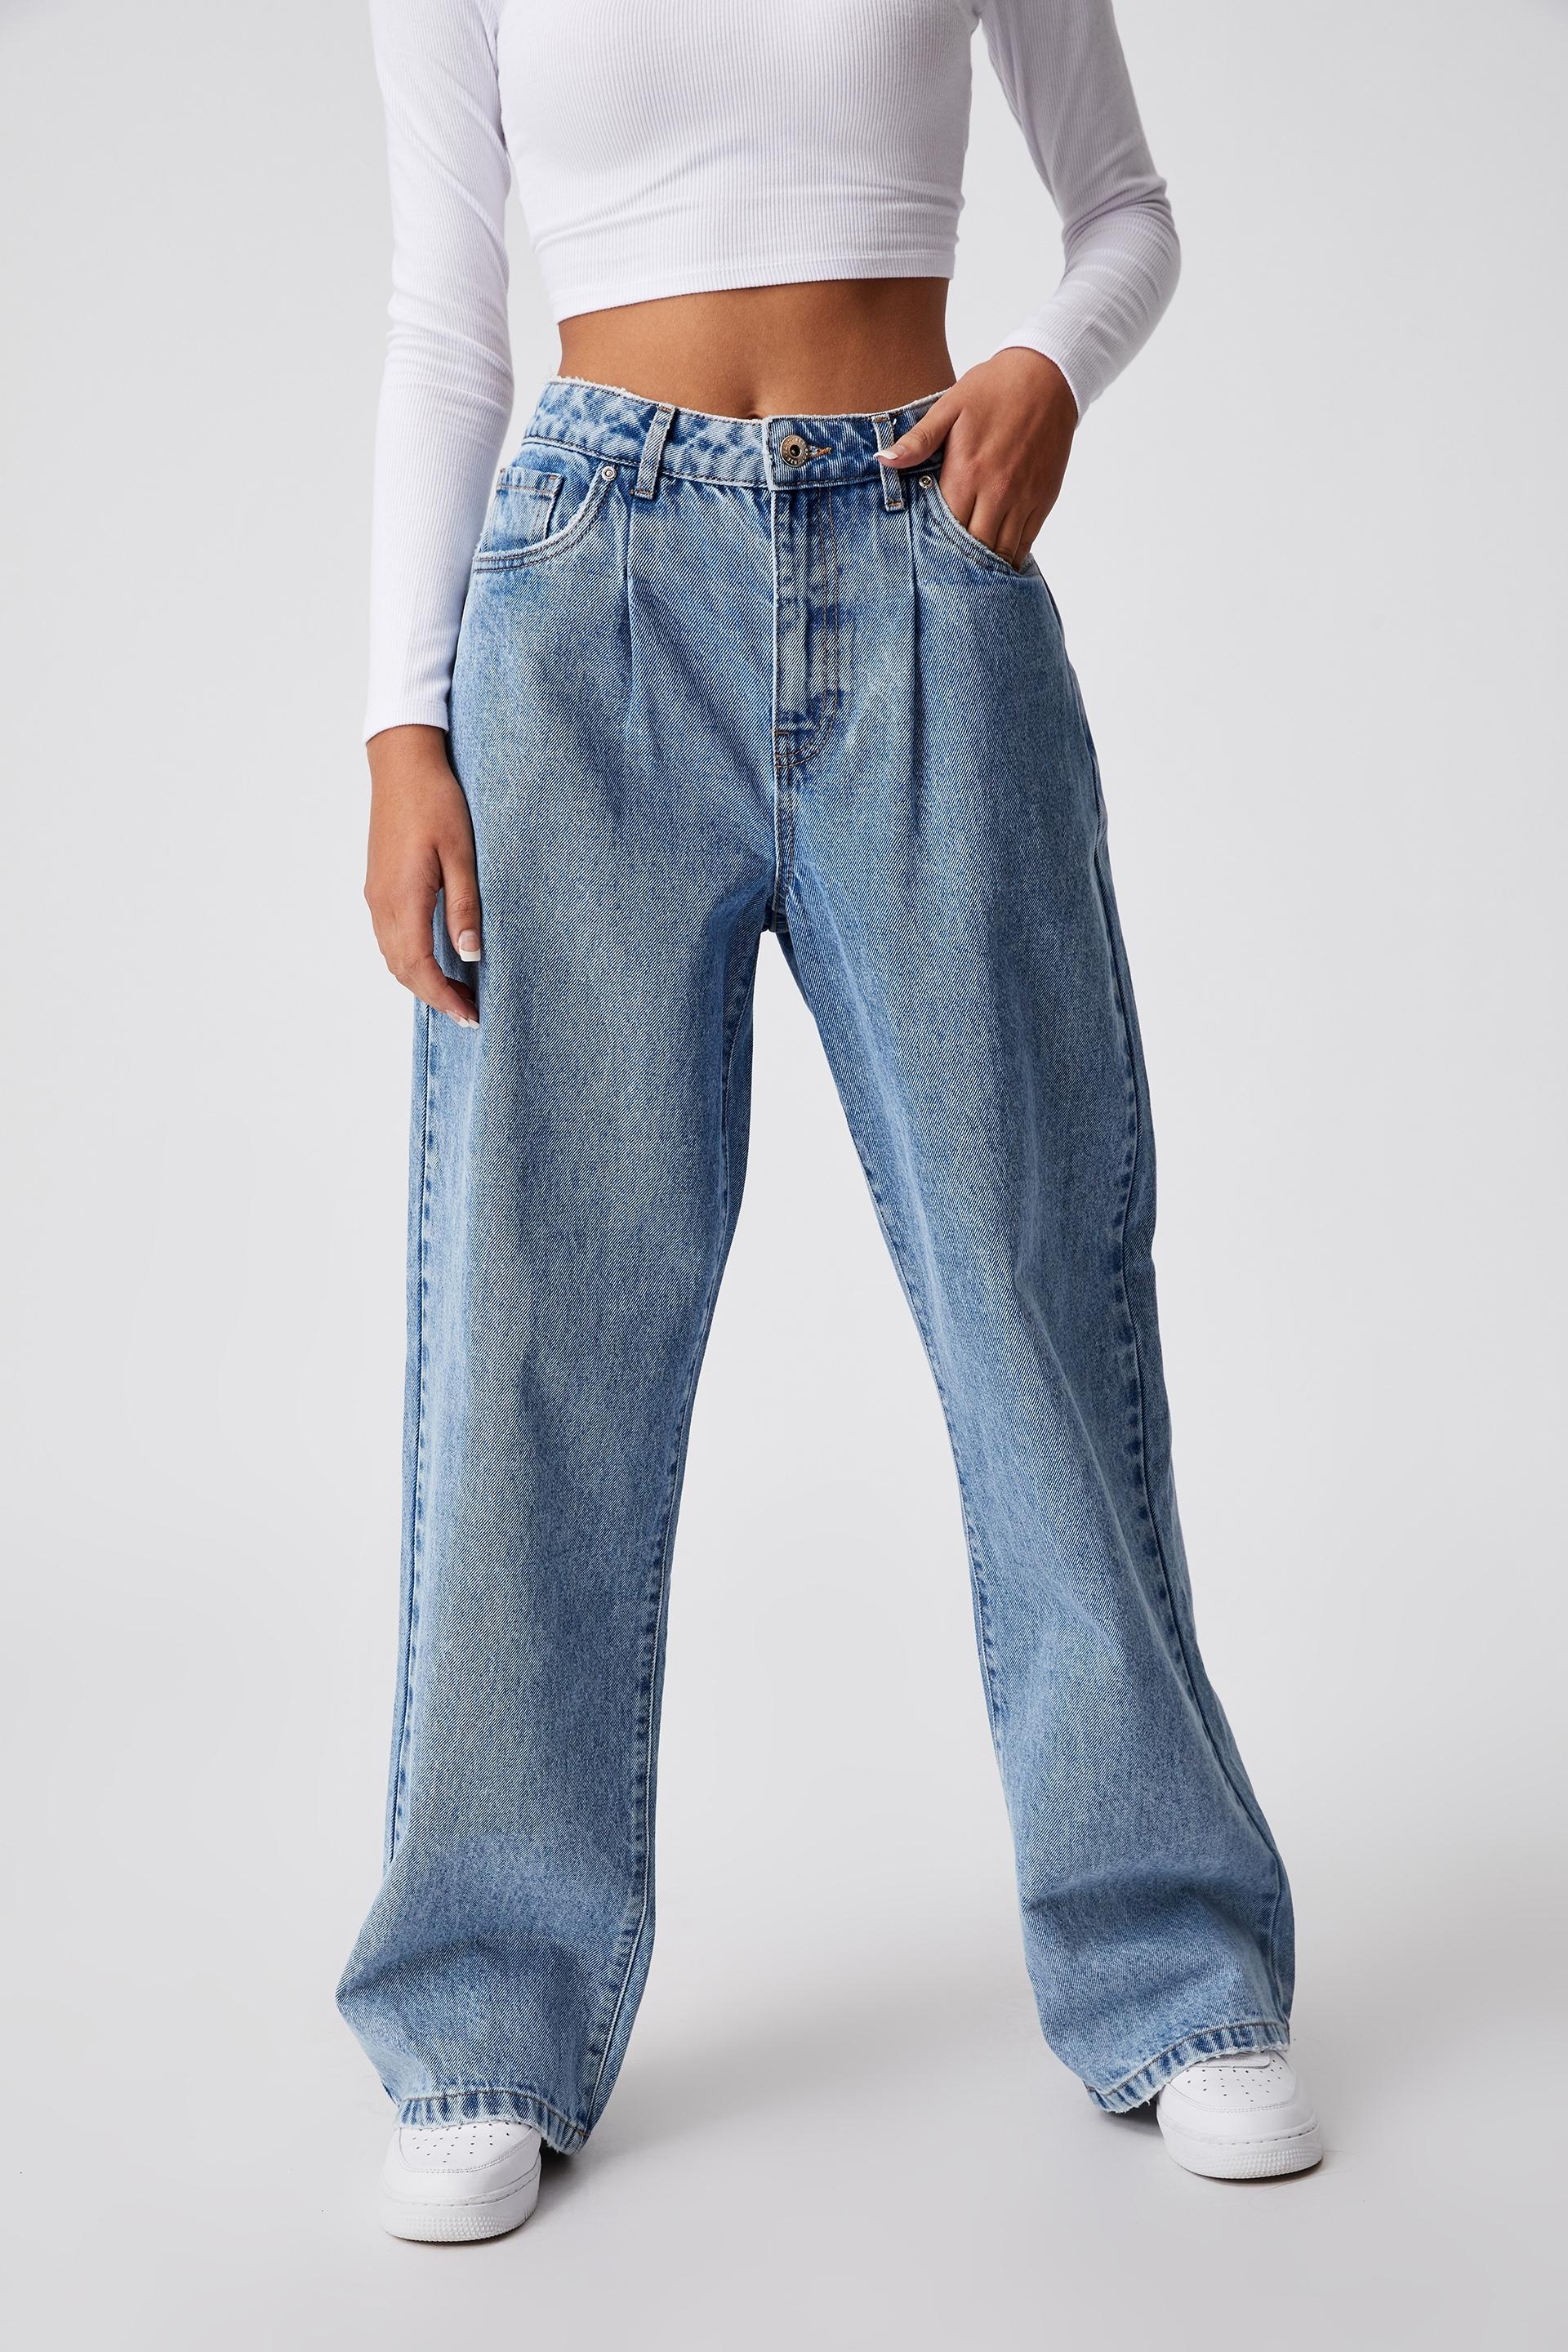 High rise baggy jeans - classic blue pleat Factorie Jeans | Superbalist.com